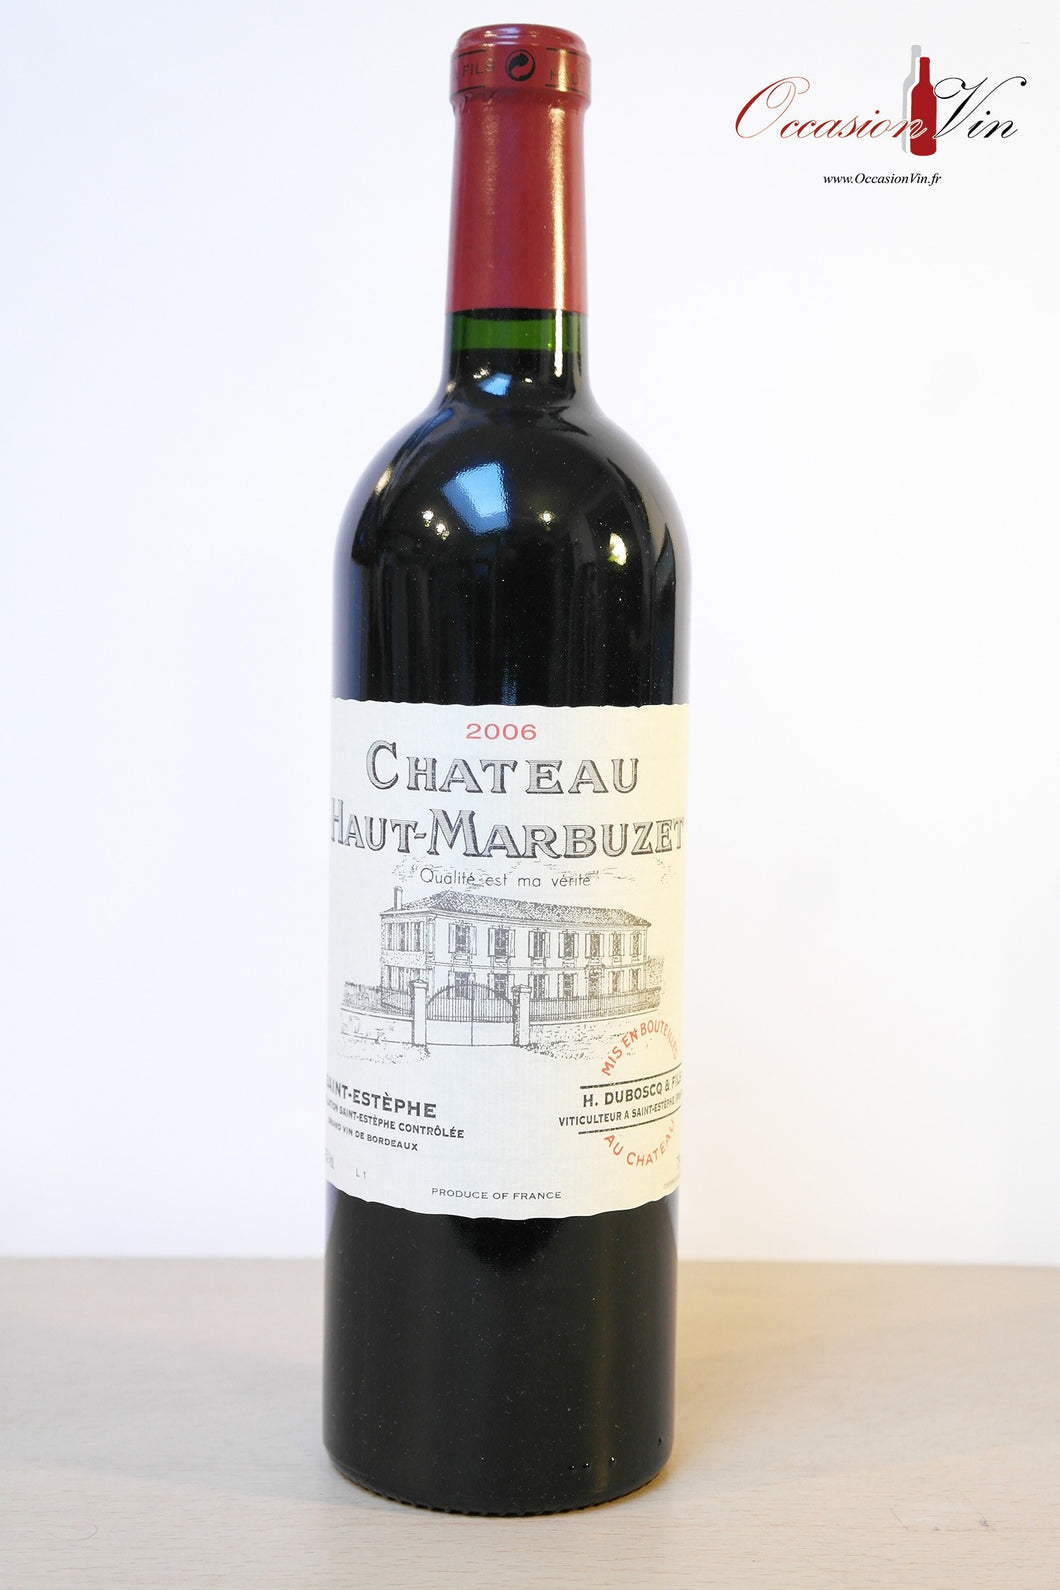 Château Haut-Marbuzet Vin 2006